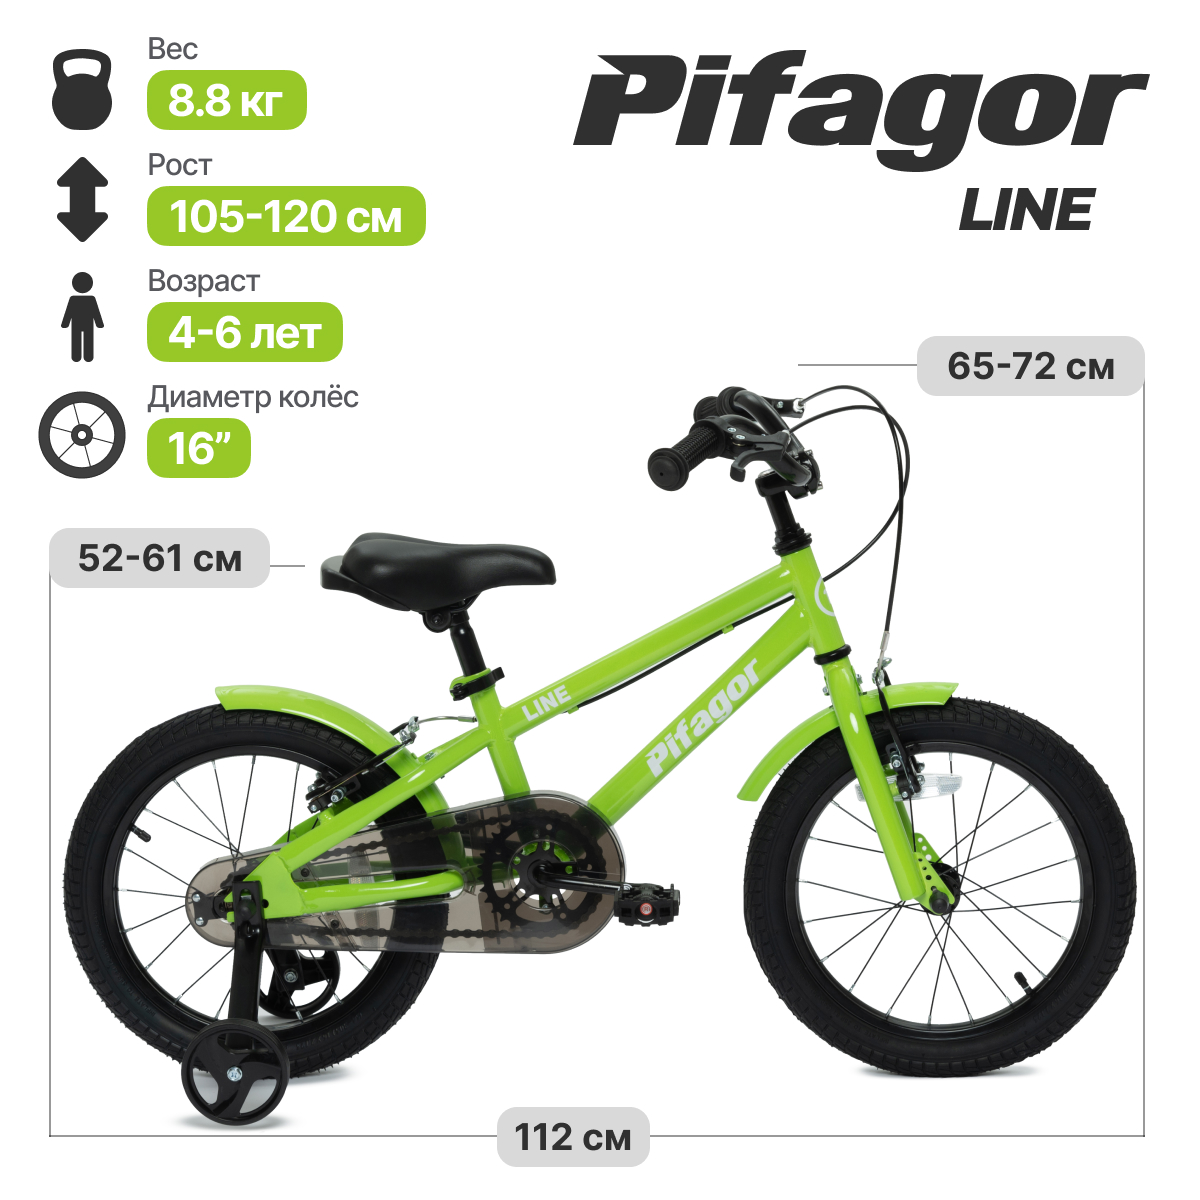 Велосипед Pifagor Line 16 PR16LNLG Светло-зеленый велосипед pifagor line 16 желтый pr16lnyl